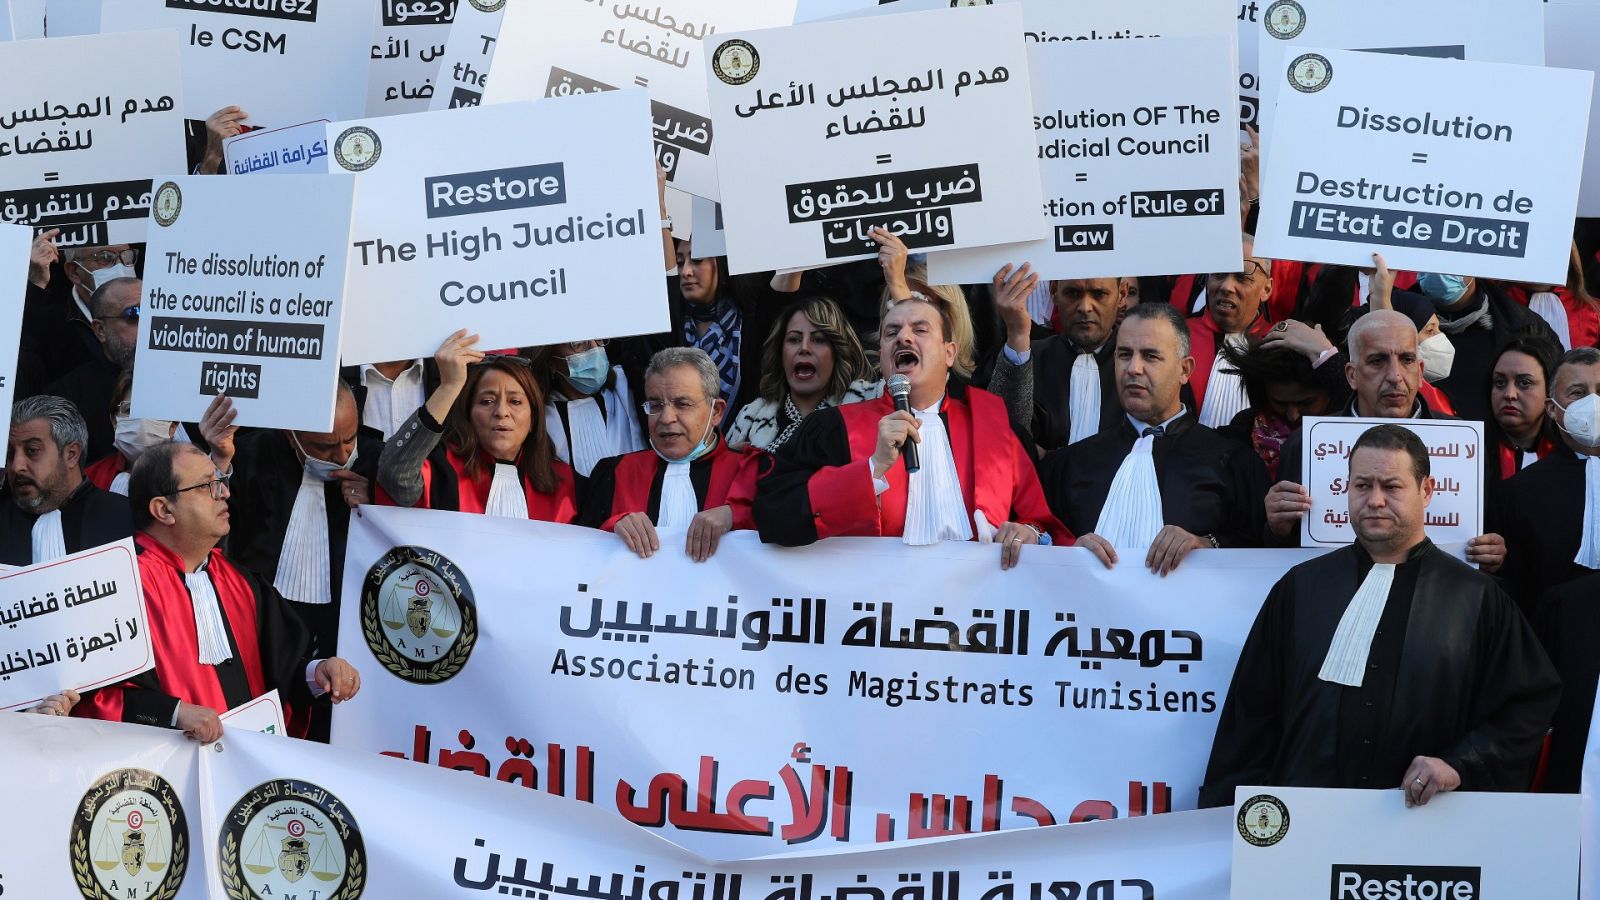 Túnez: Magistrados denuncian "abusos" en el poder judicial